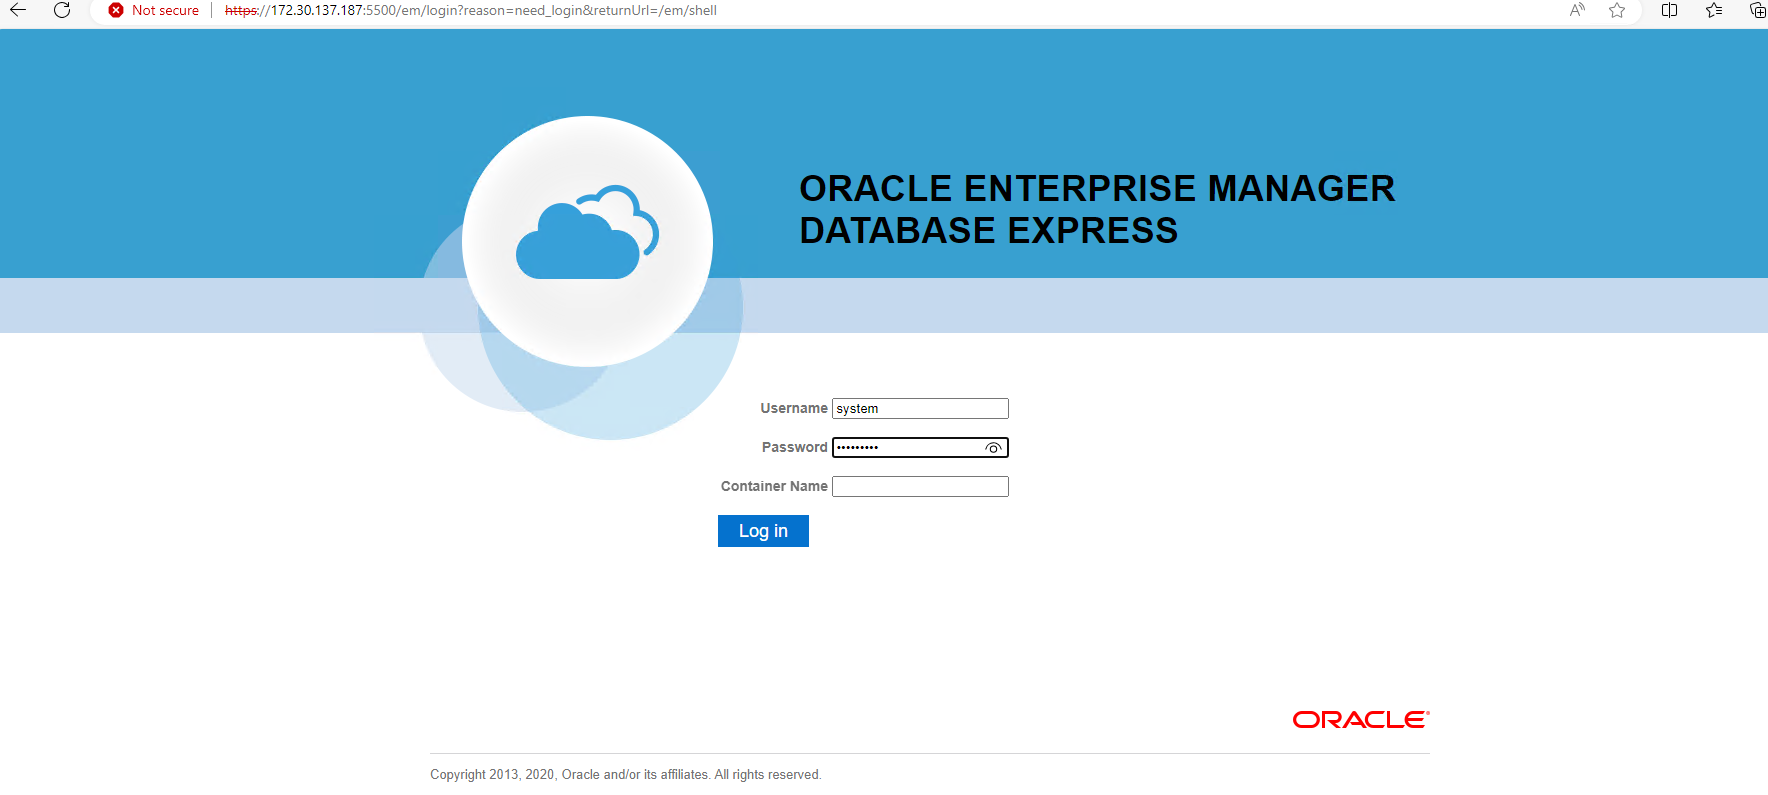 Questa immagine fornisce la schermata di accesso per Oracle Enterprise Manager Express